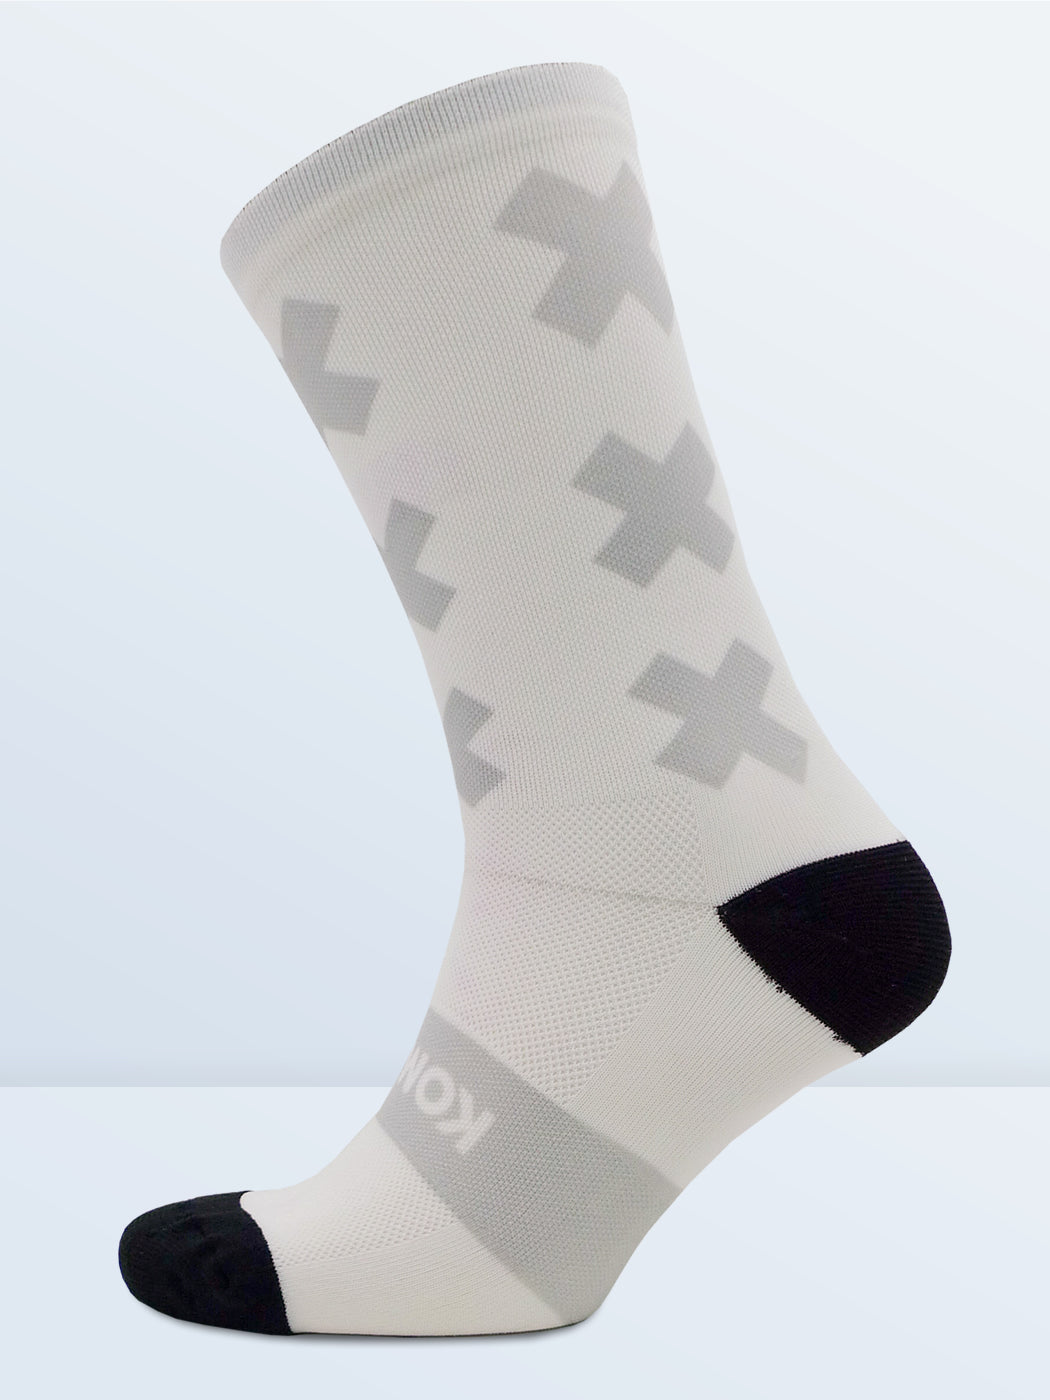 Triple X Socks - White & Grey